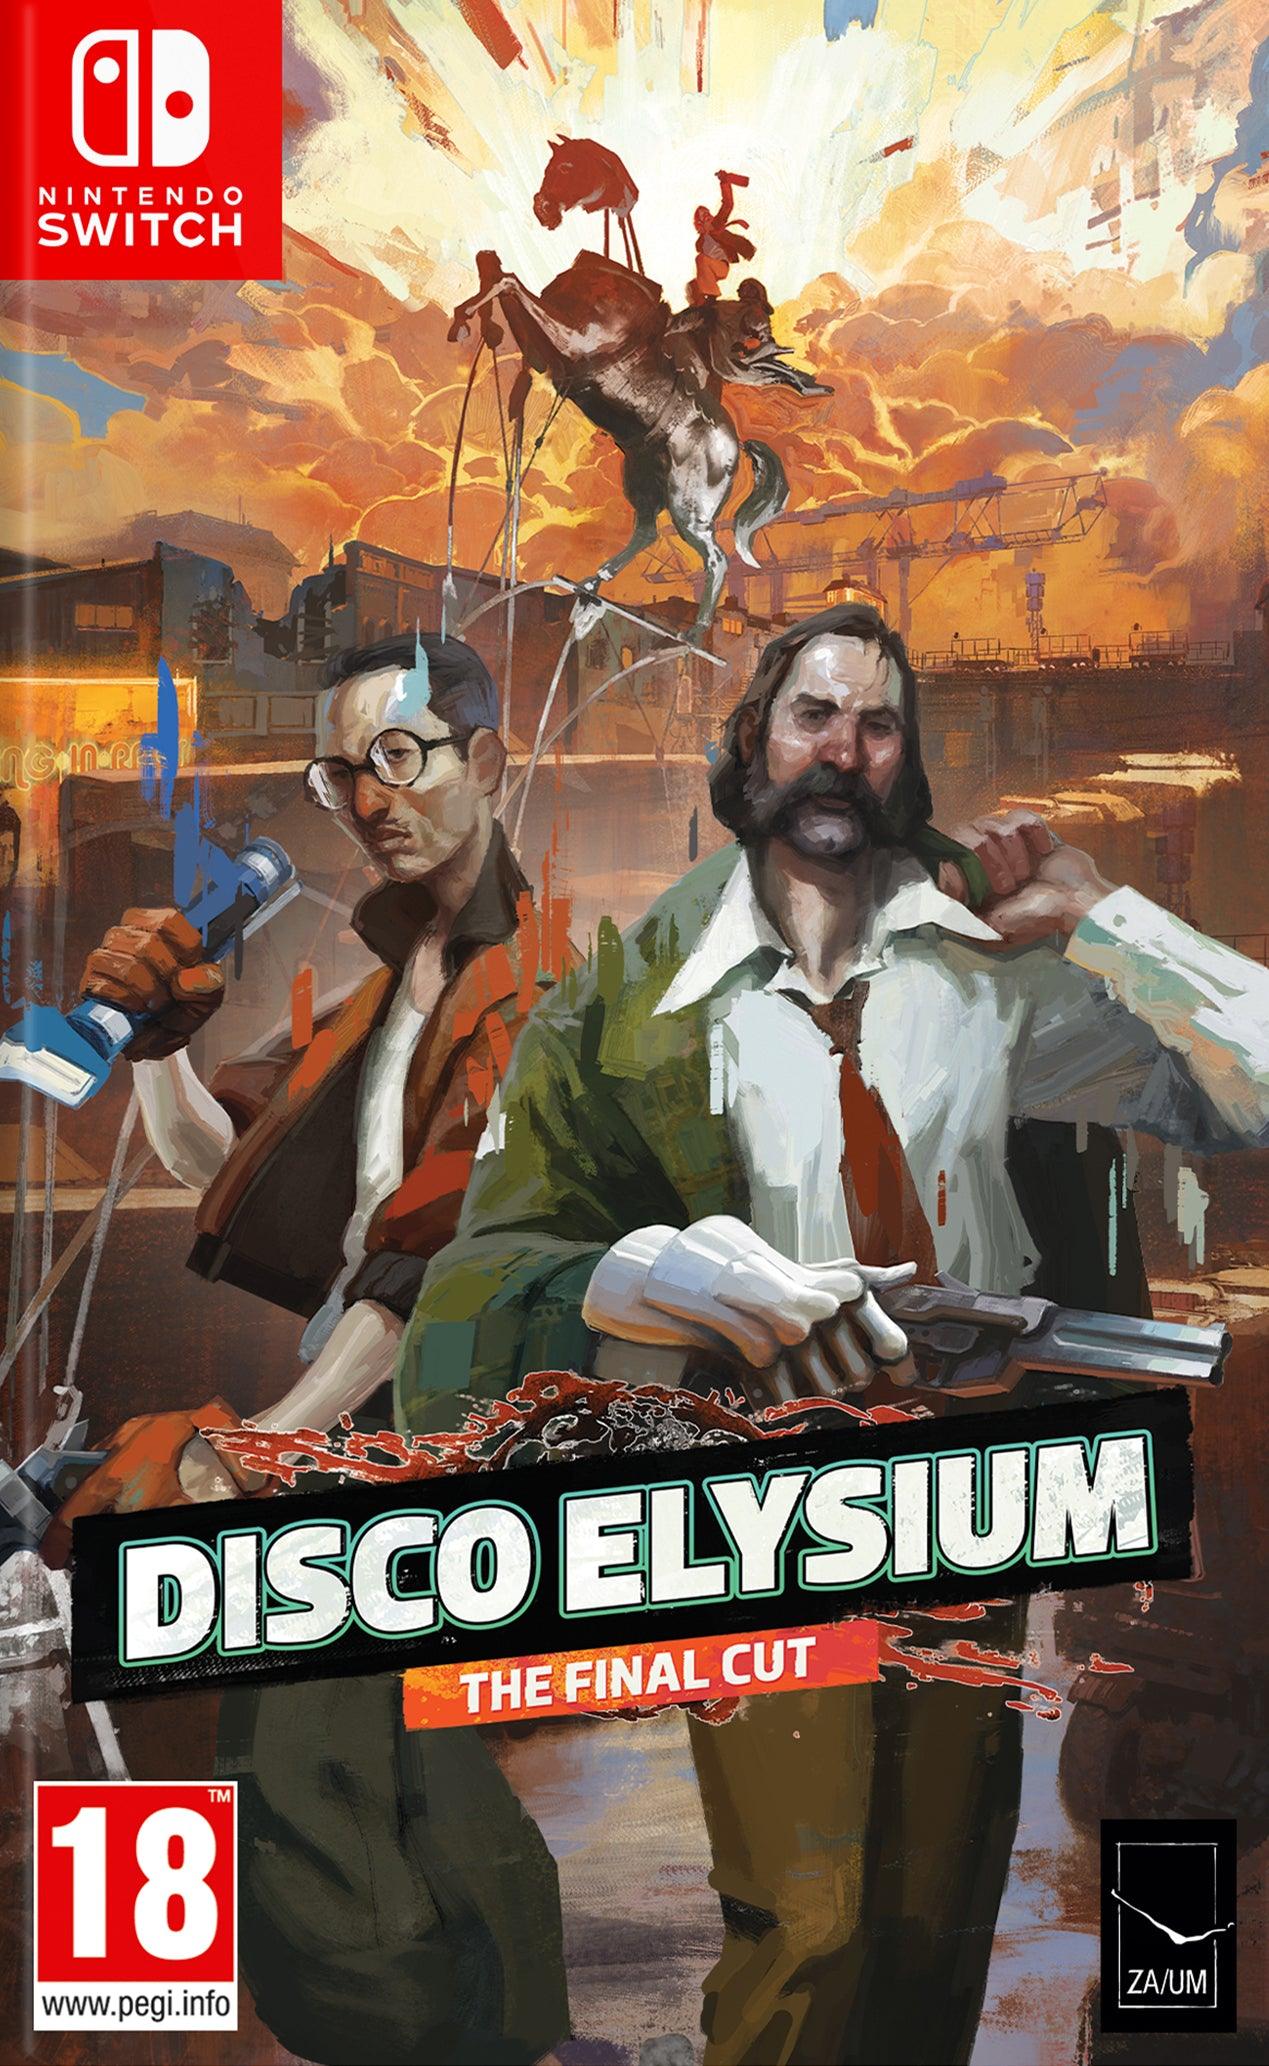 Disco Elysium The Final Cut - Want a New Gadget